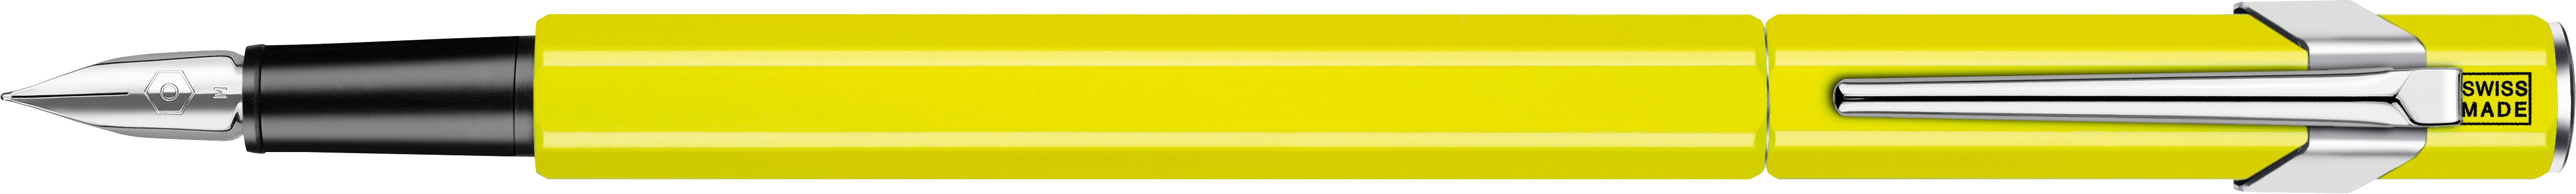 CARAN D'ACHE Stylo plume 849 M 840.470 jaune fluo, verni jaune fluo, verni